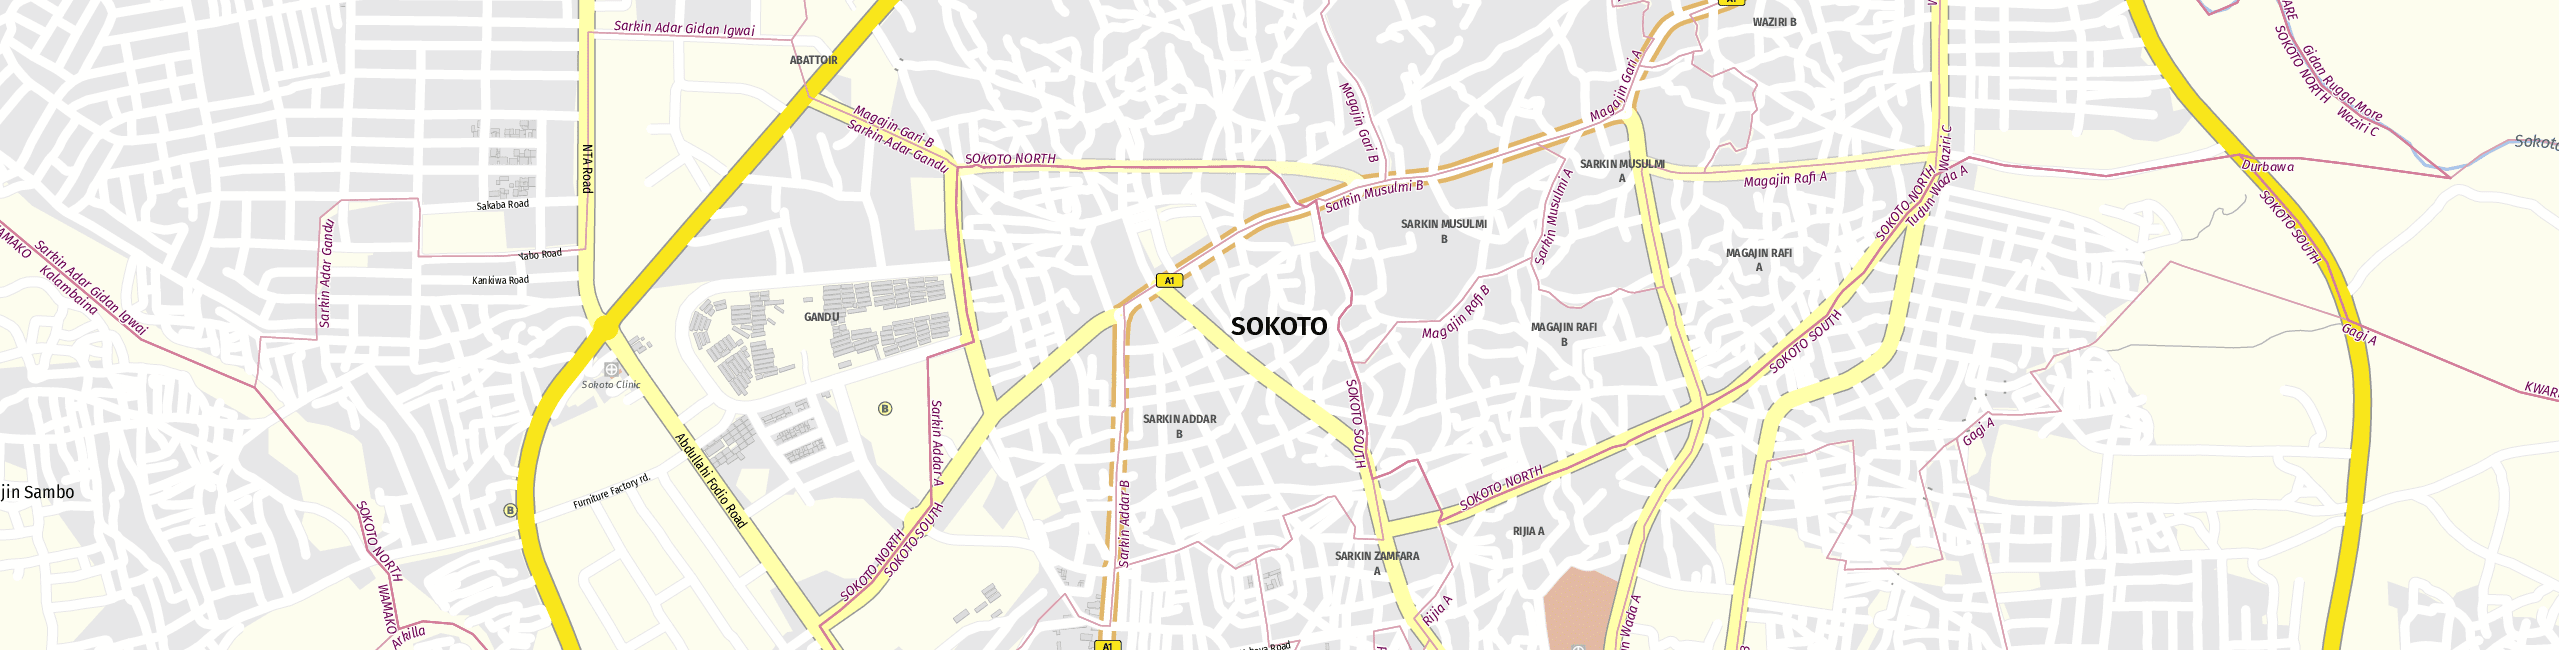 Stadtplan Sokoto zum Downloaden.